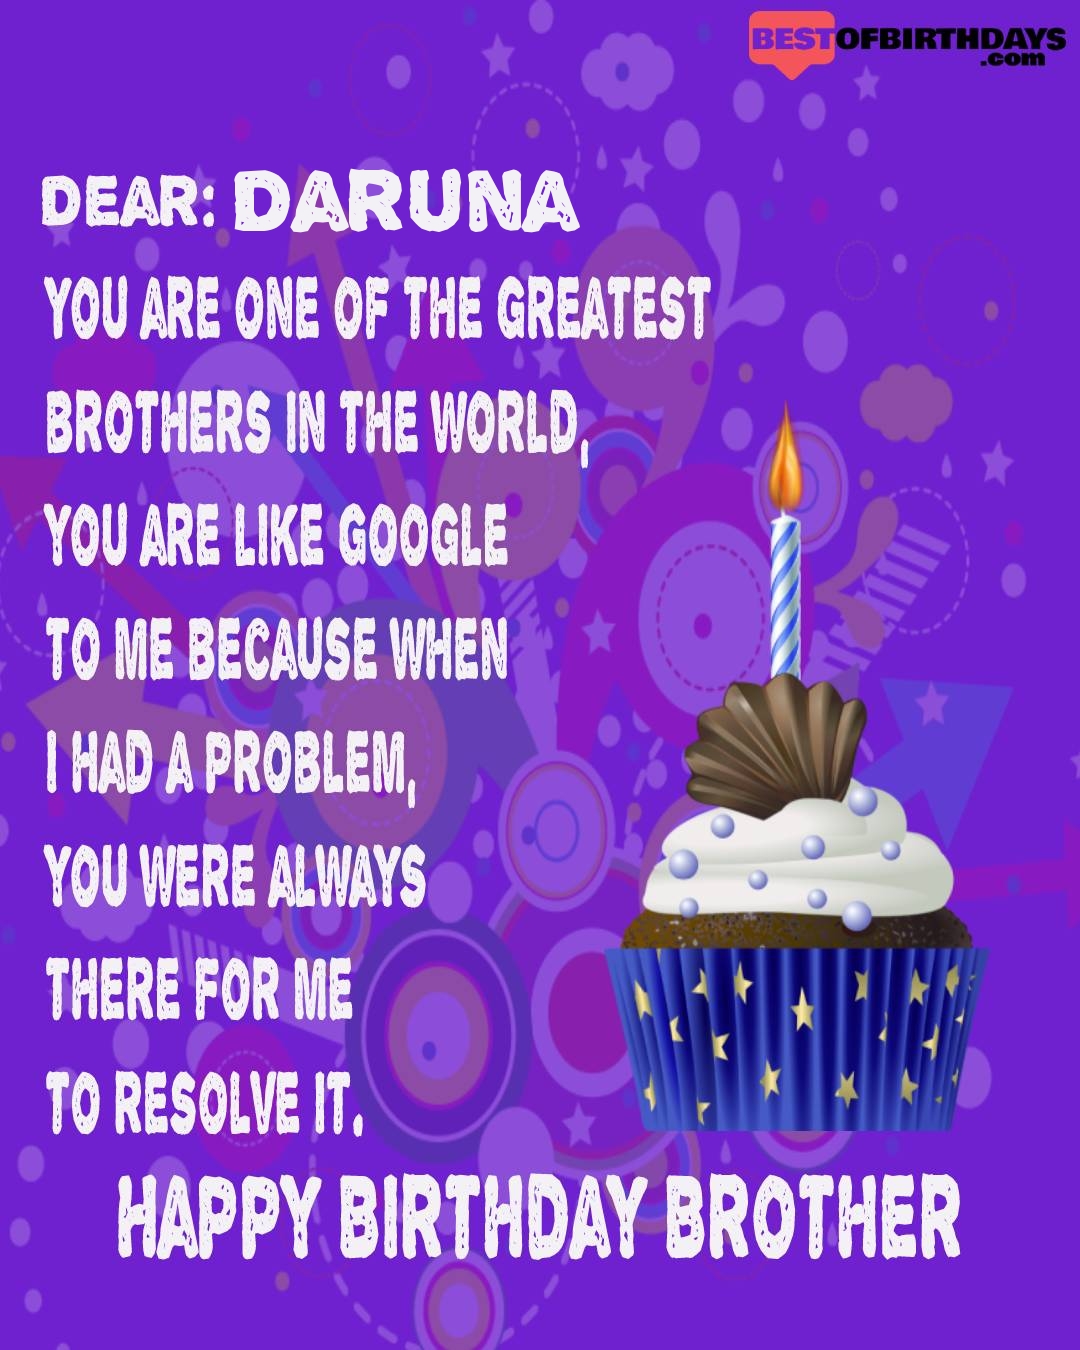 Happy birthday daruna bhai brother bro